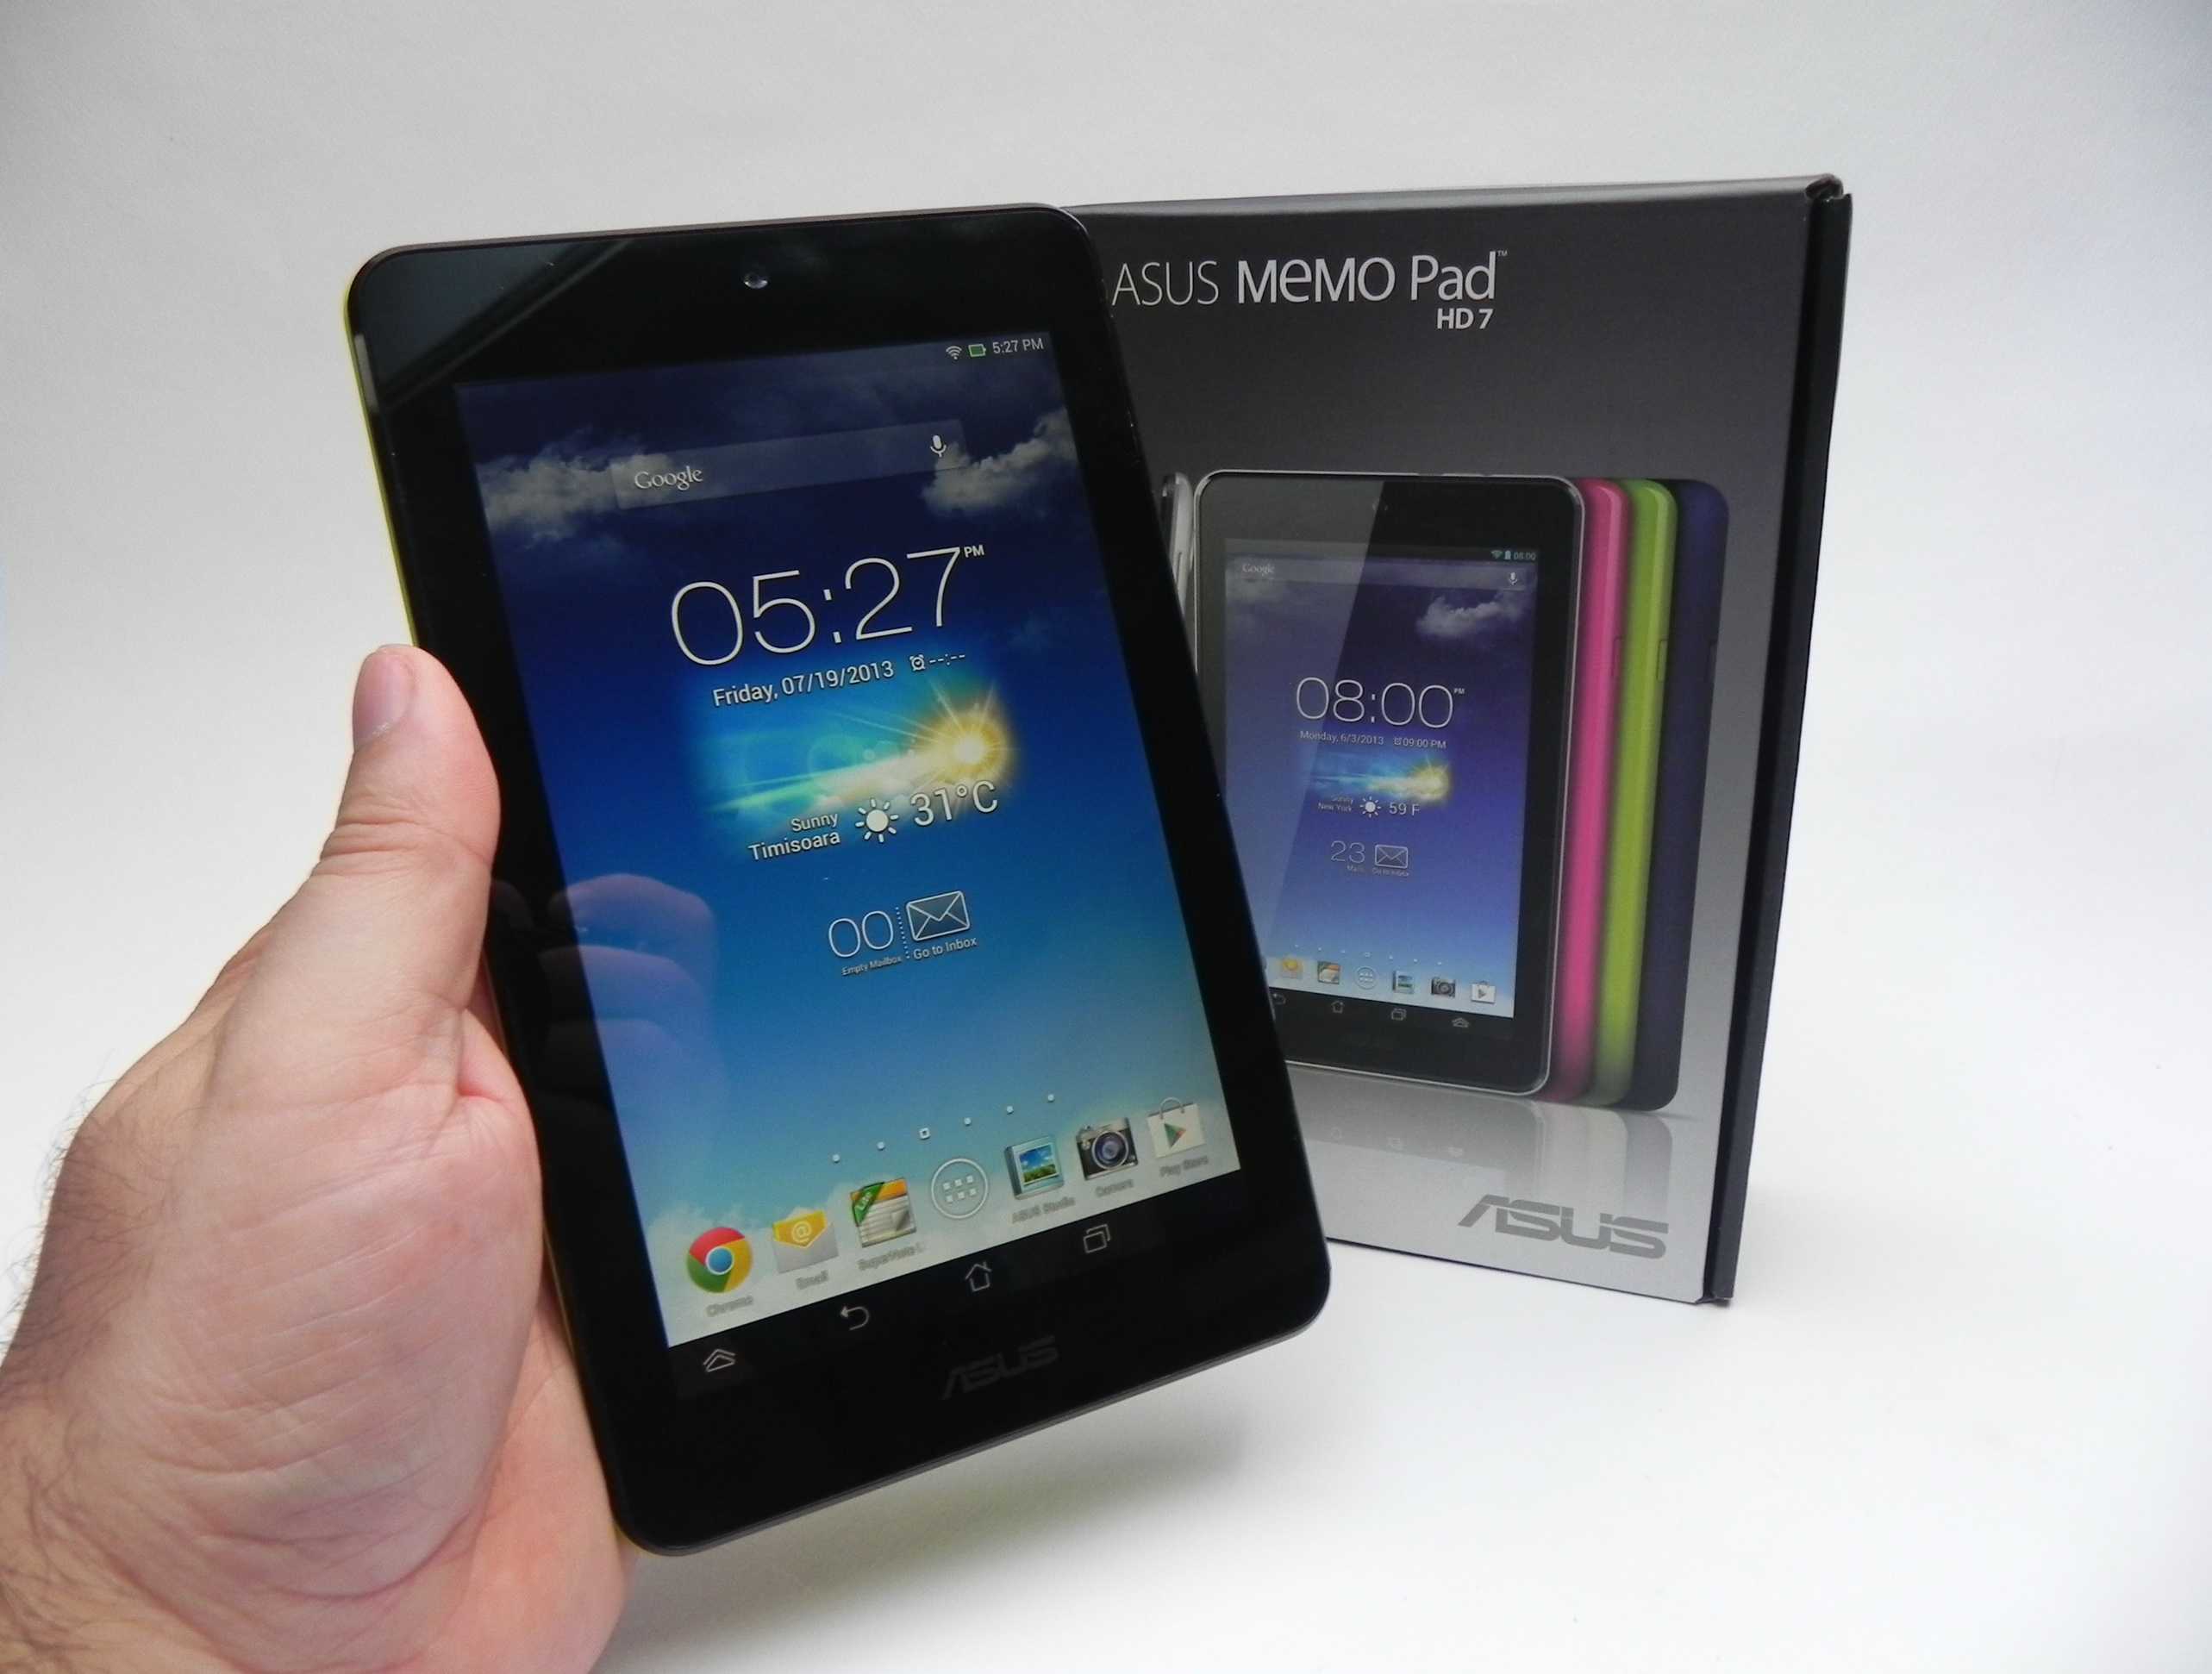 Asus memo pad hd 7 me173x 16gb купить по акционной цене , отзывы и обзоры.